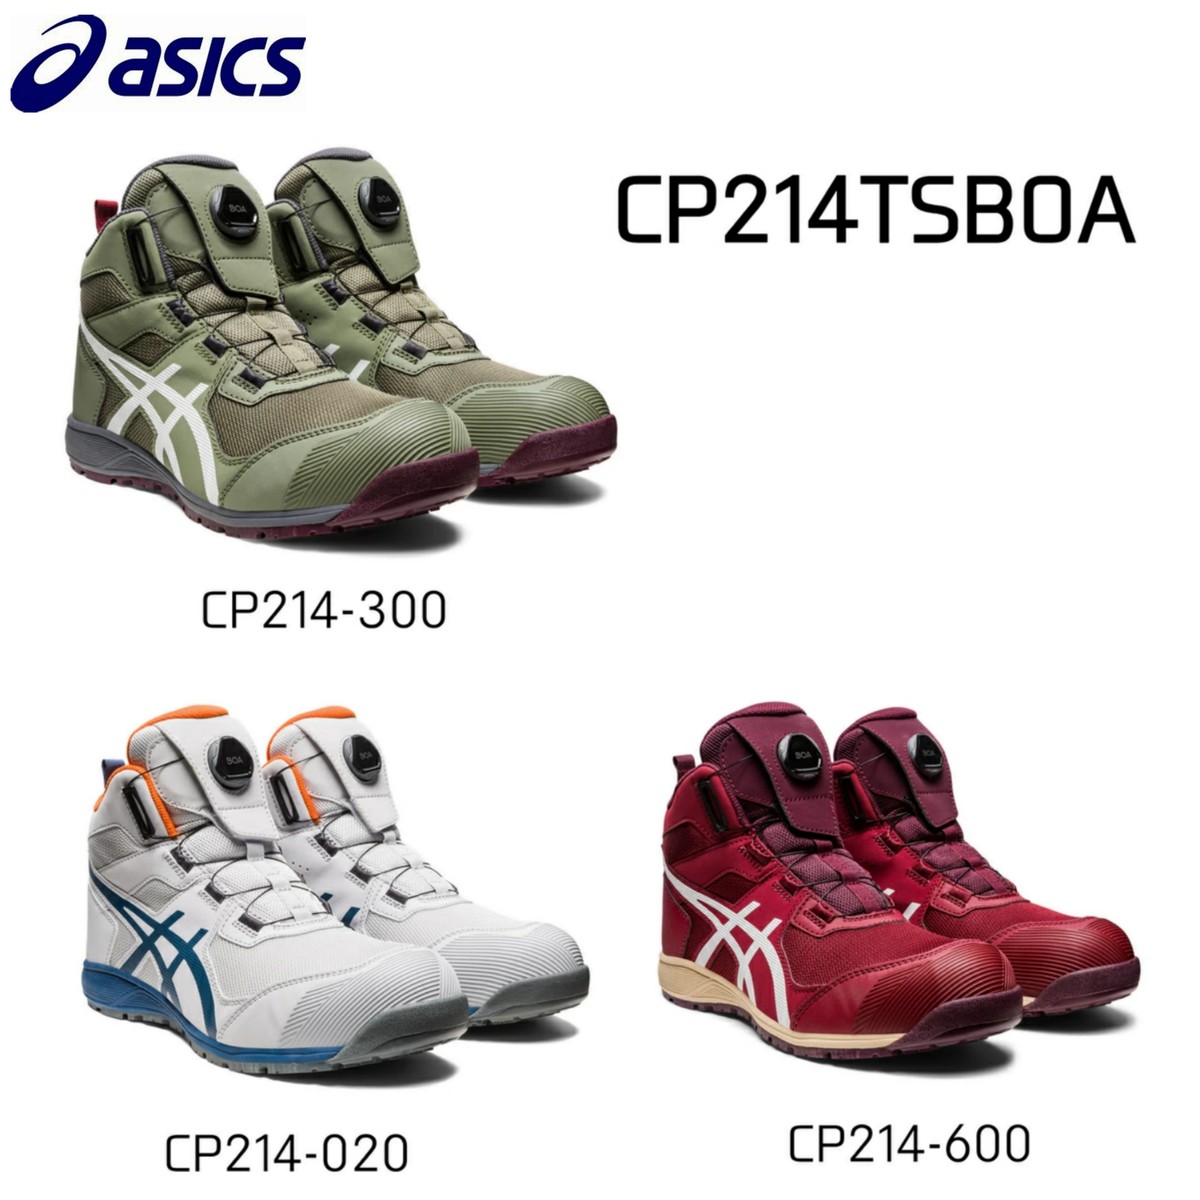 アシックス 安全靴 BOA asics CP214 TS Boa 最新モデル ハイカット ウィンジョブ ダイヤル式 セーフティーシューズ